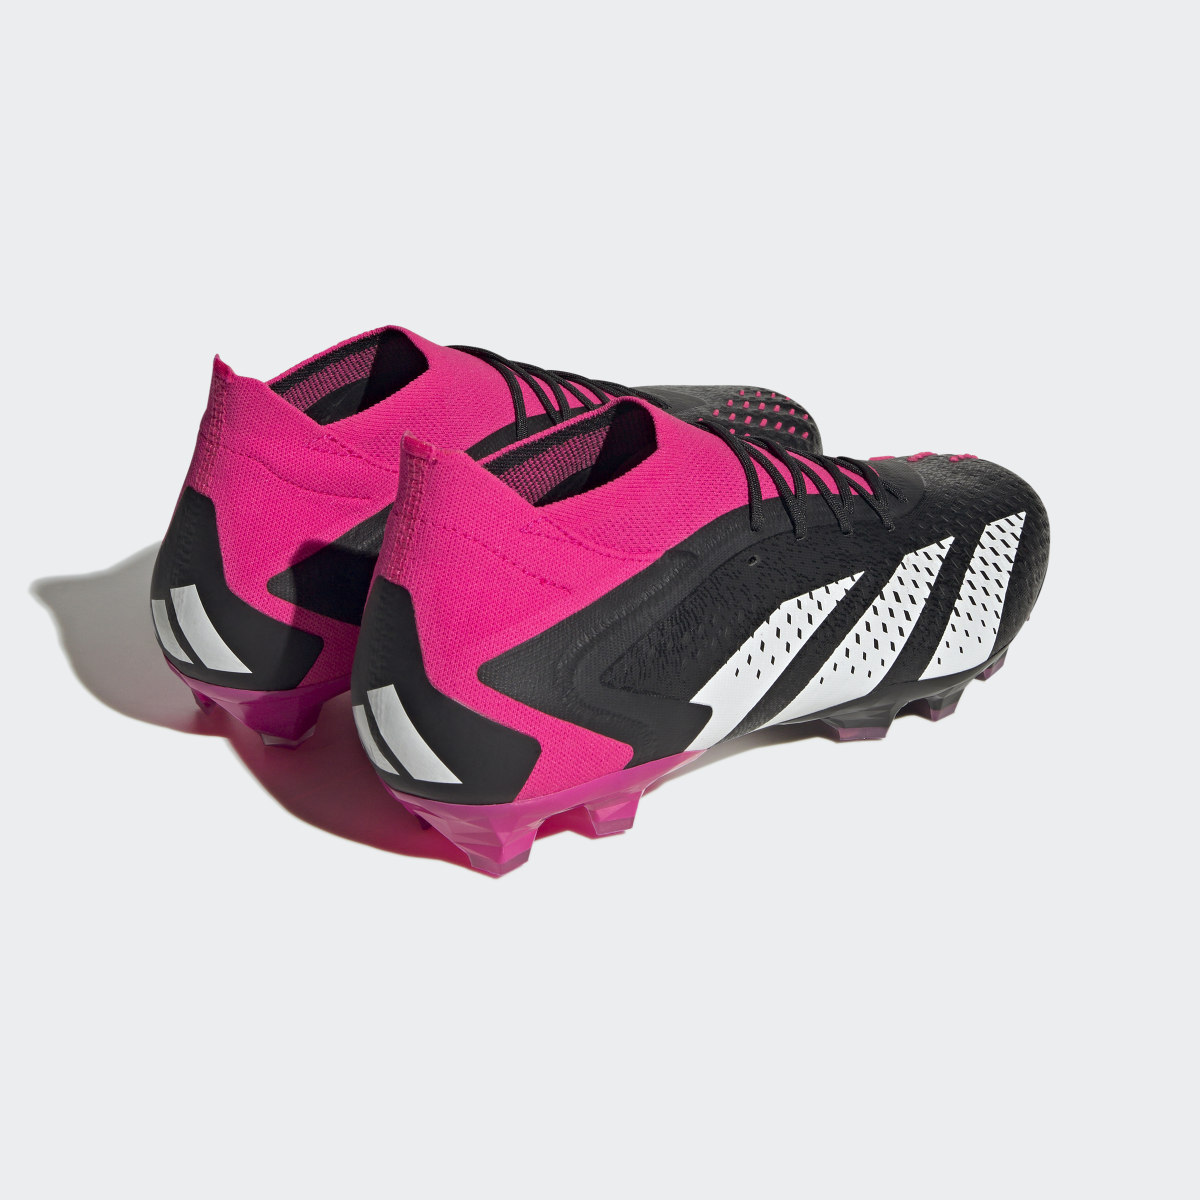 Adidas Predator Accuracy.1 Artificial Grass Boots. 9